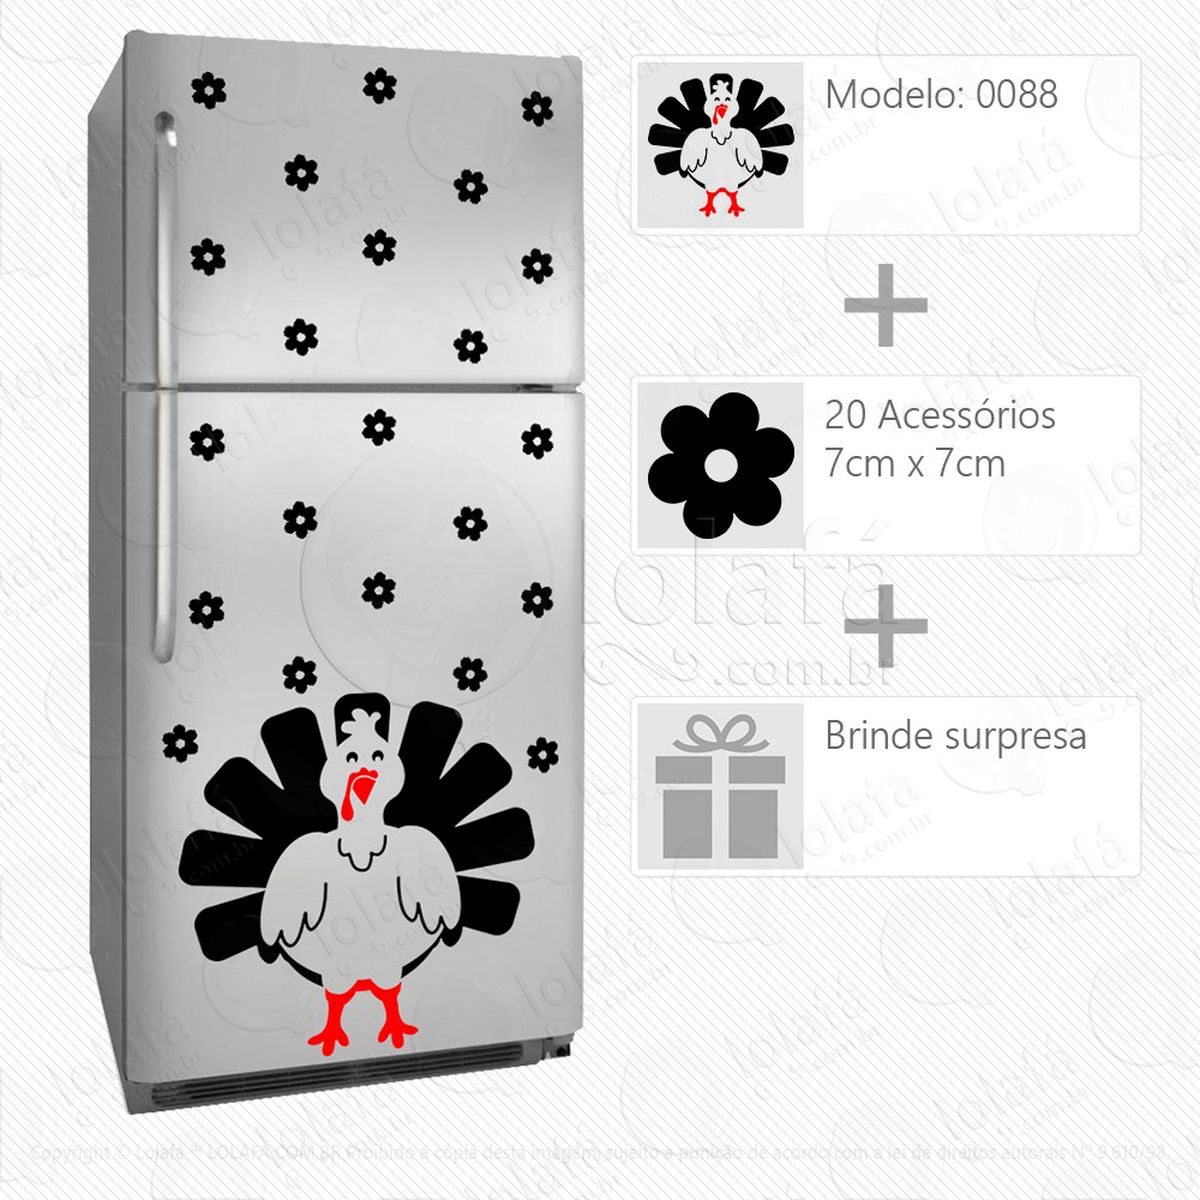 galinha adesivo para geladeira e frigobar - mod:88